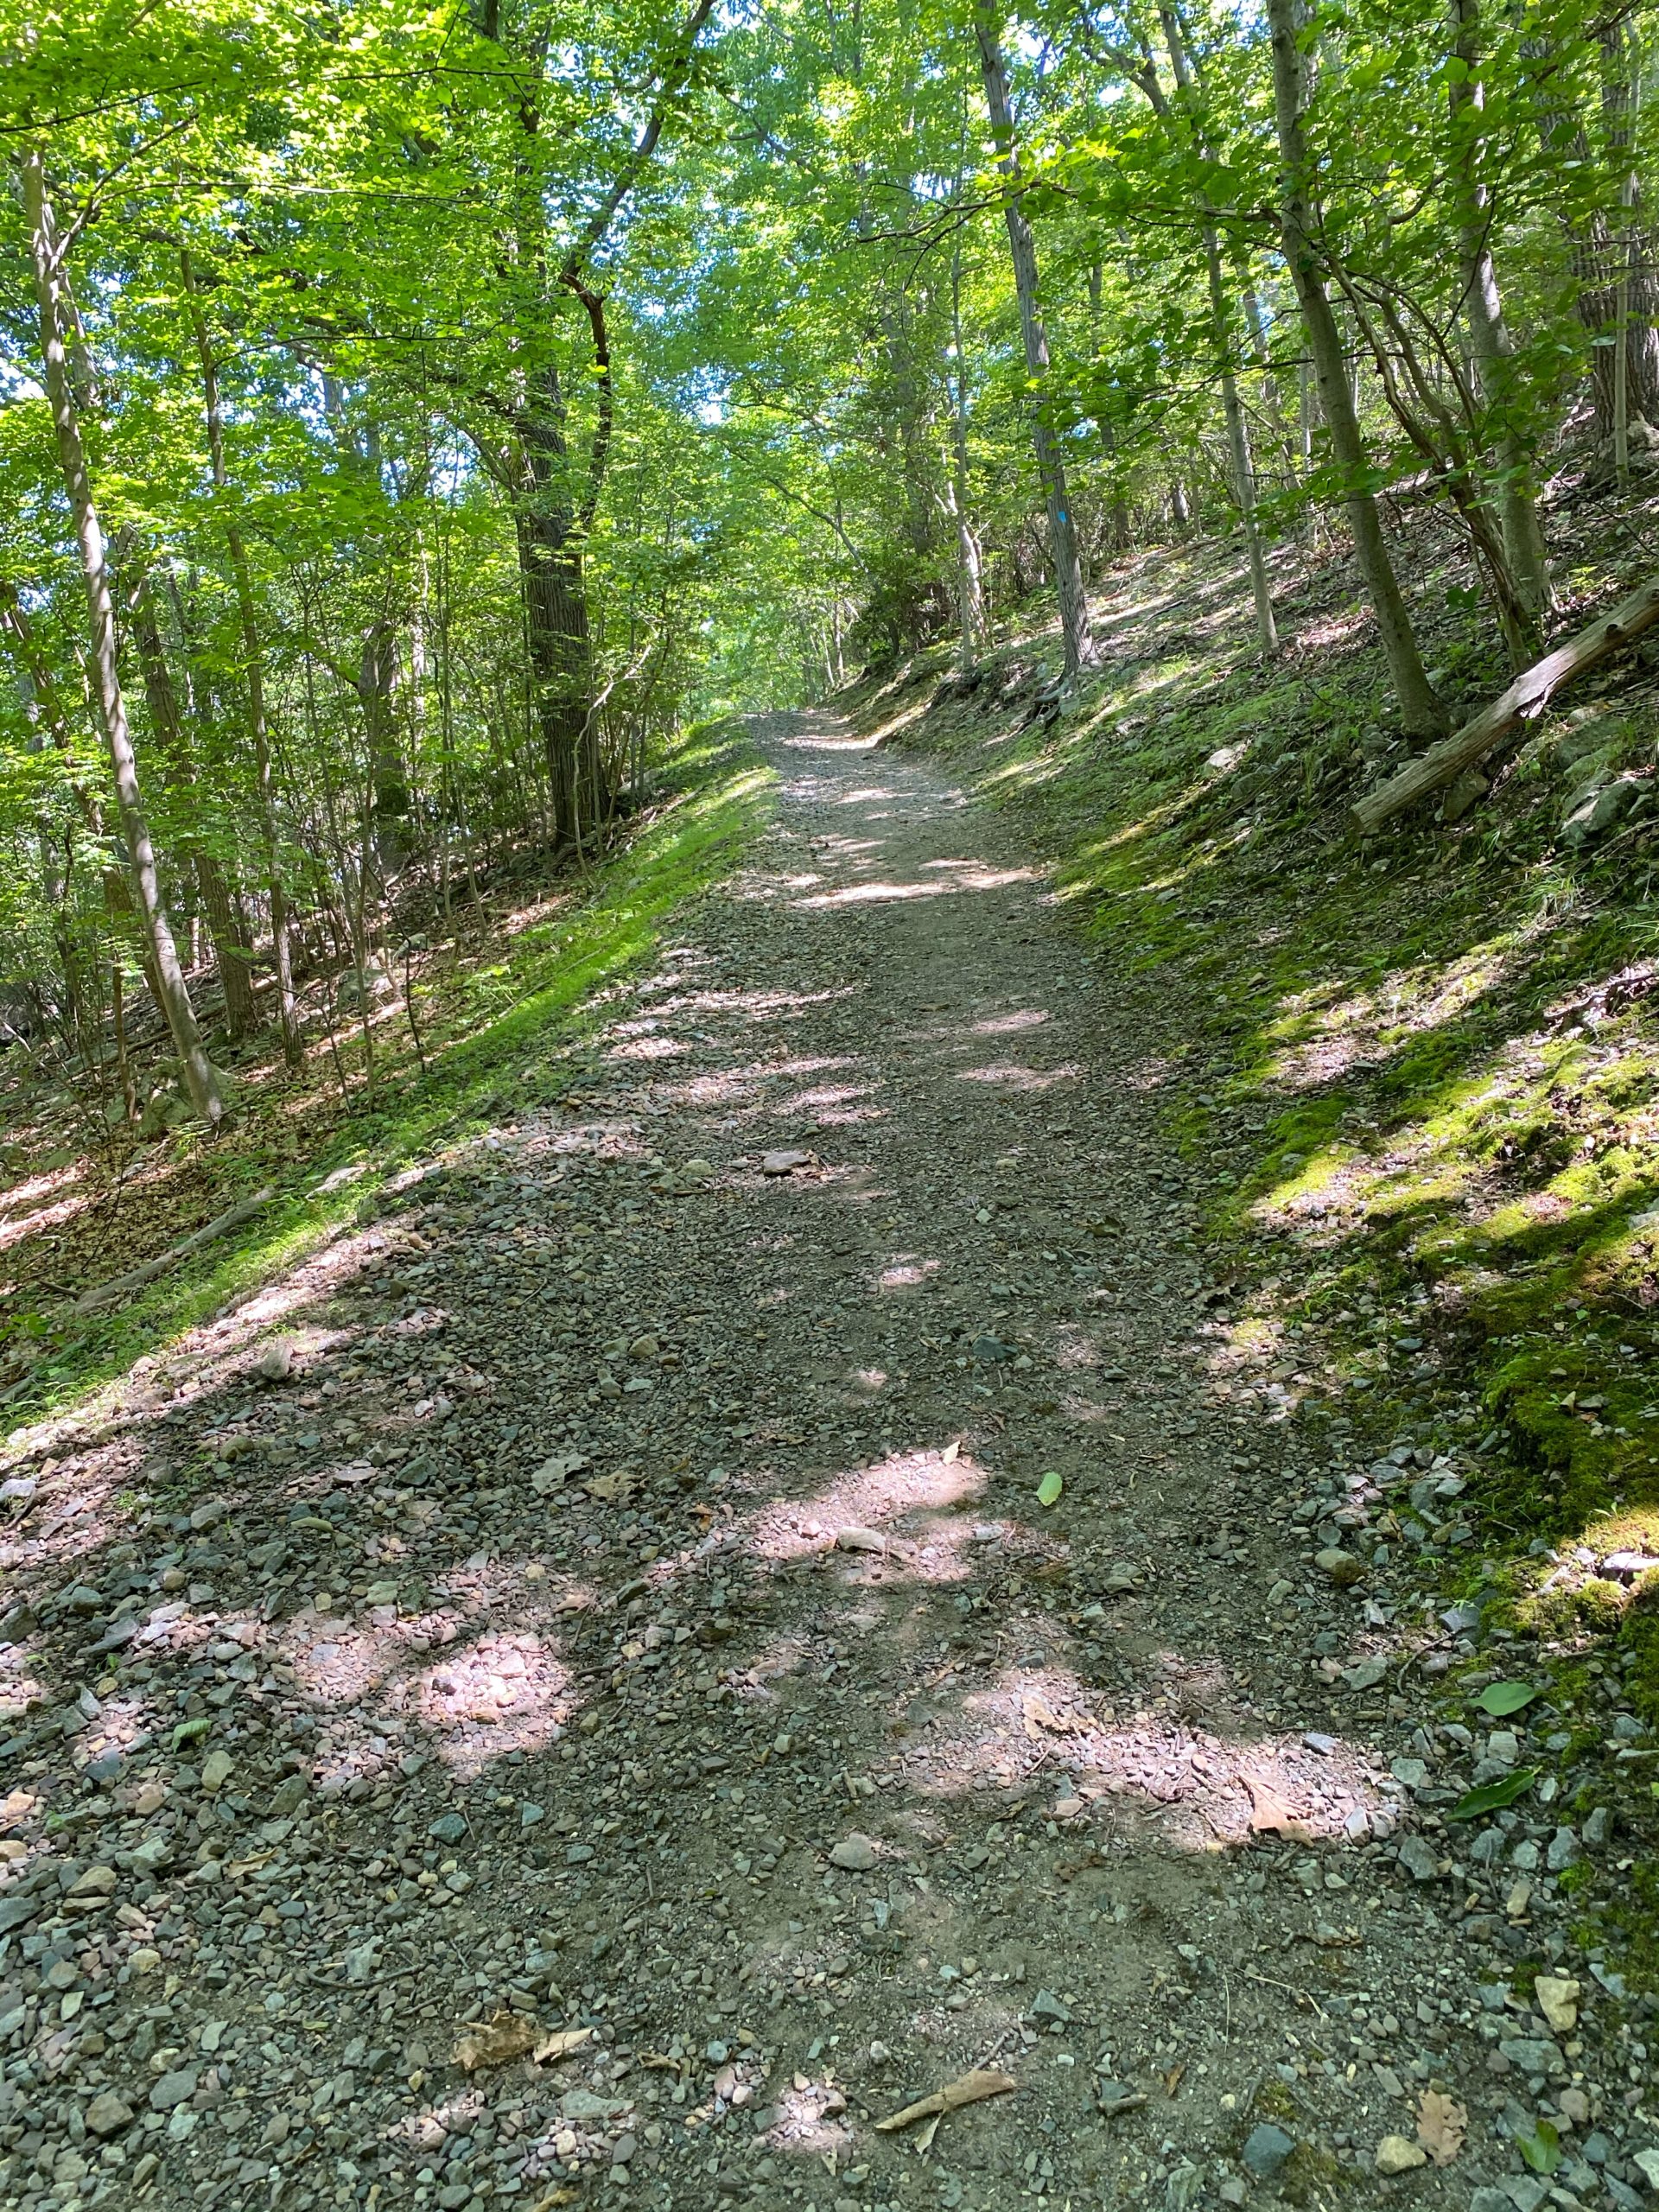 Blue trail